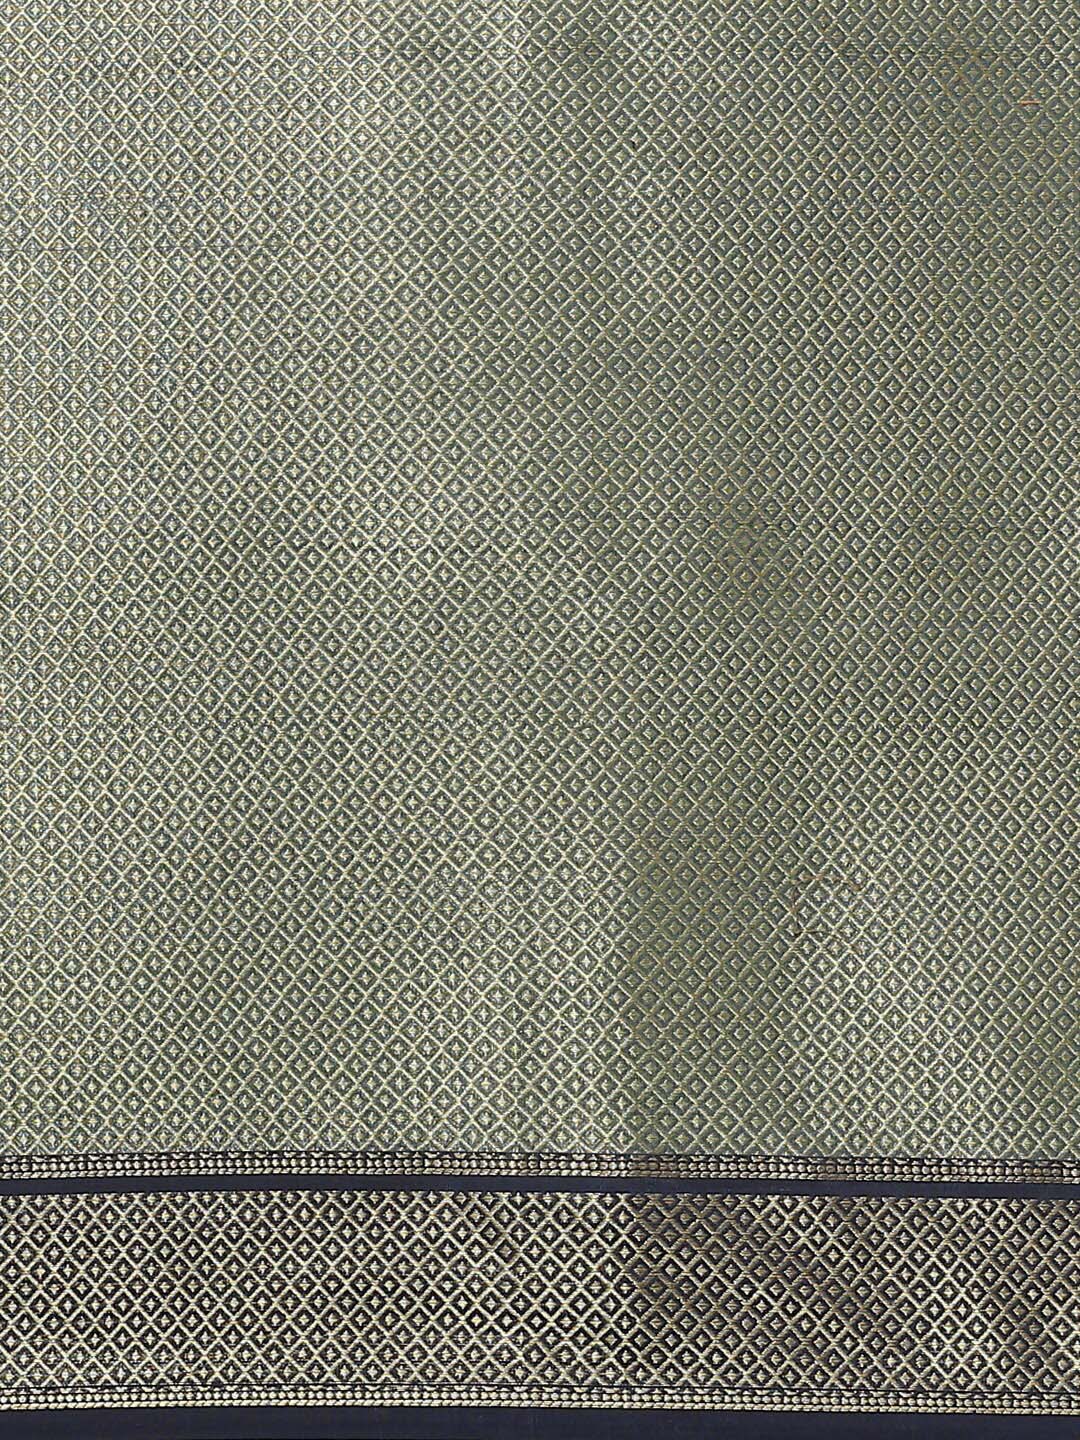 Indethnic Banarasi Teal Woven Design Work Wear Saree - Saree Detail View